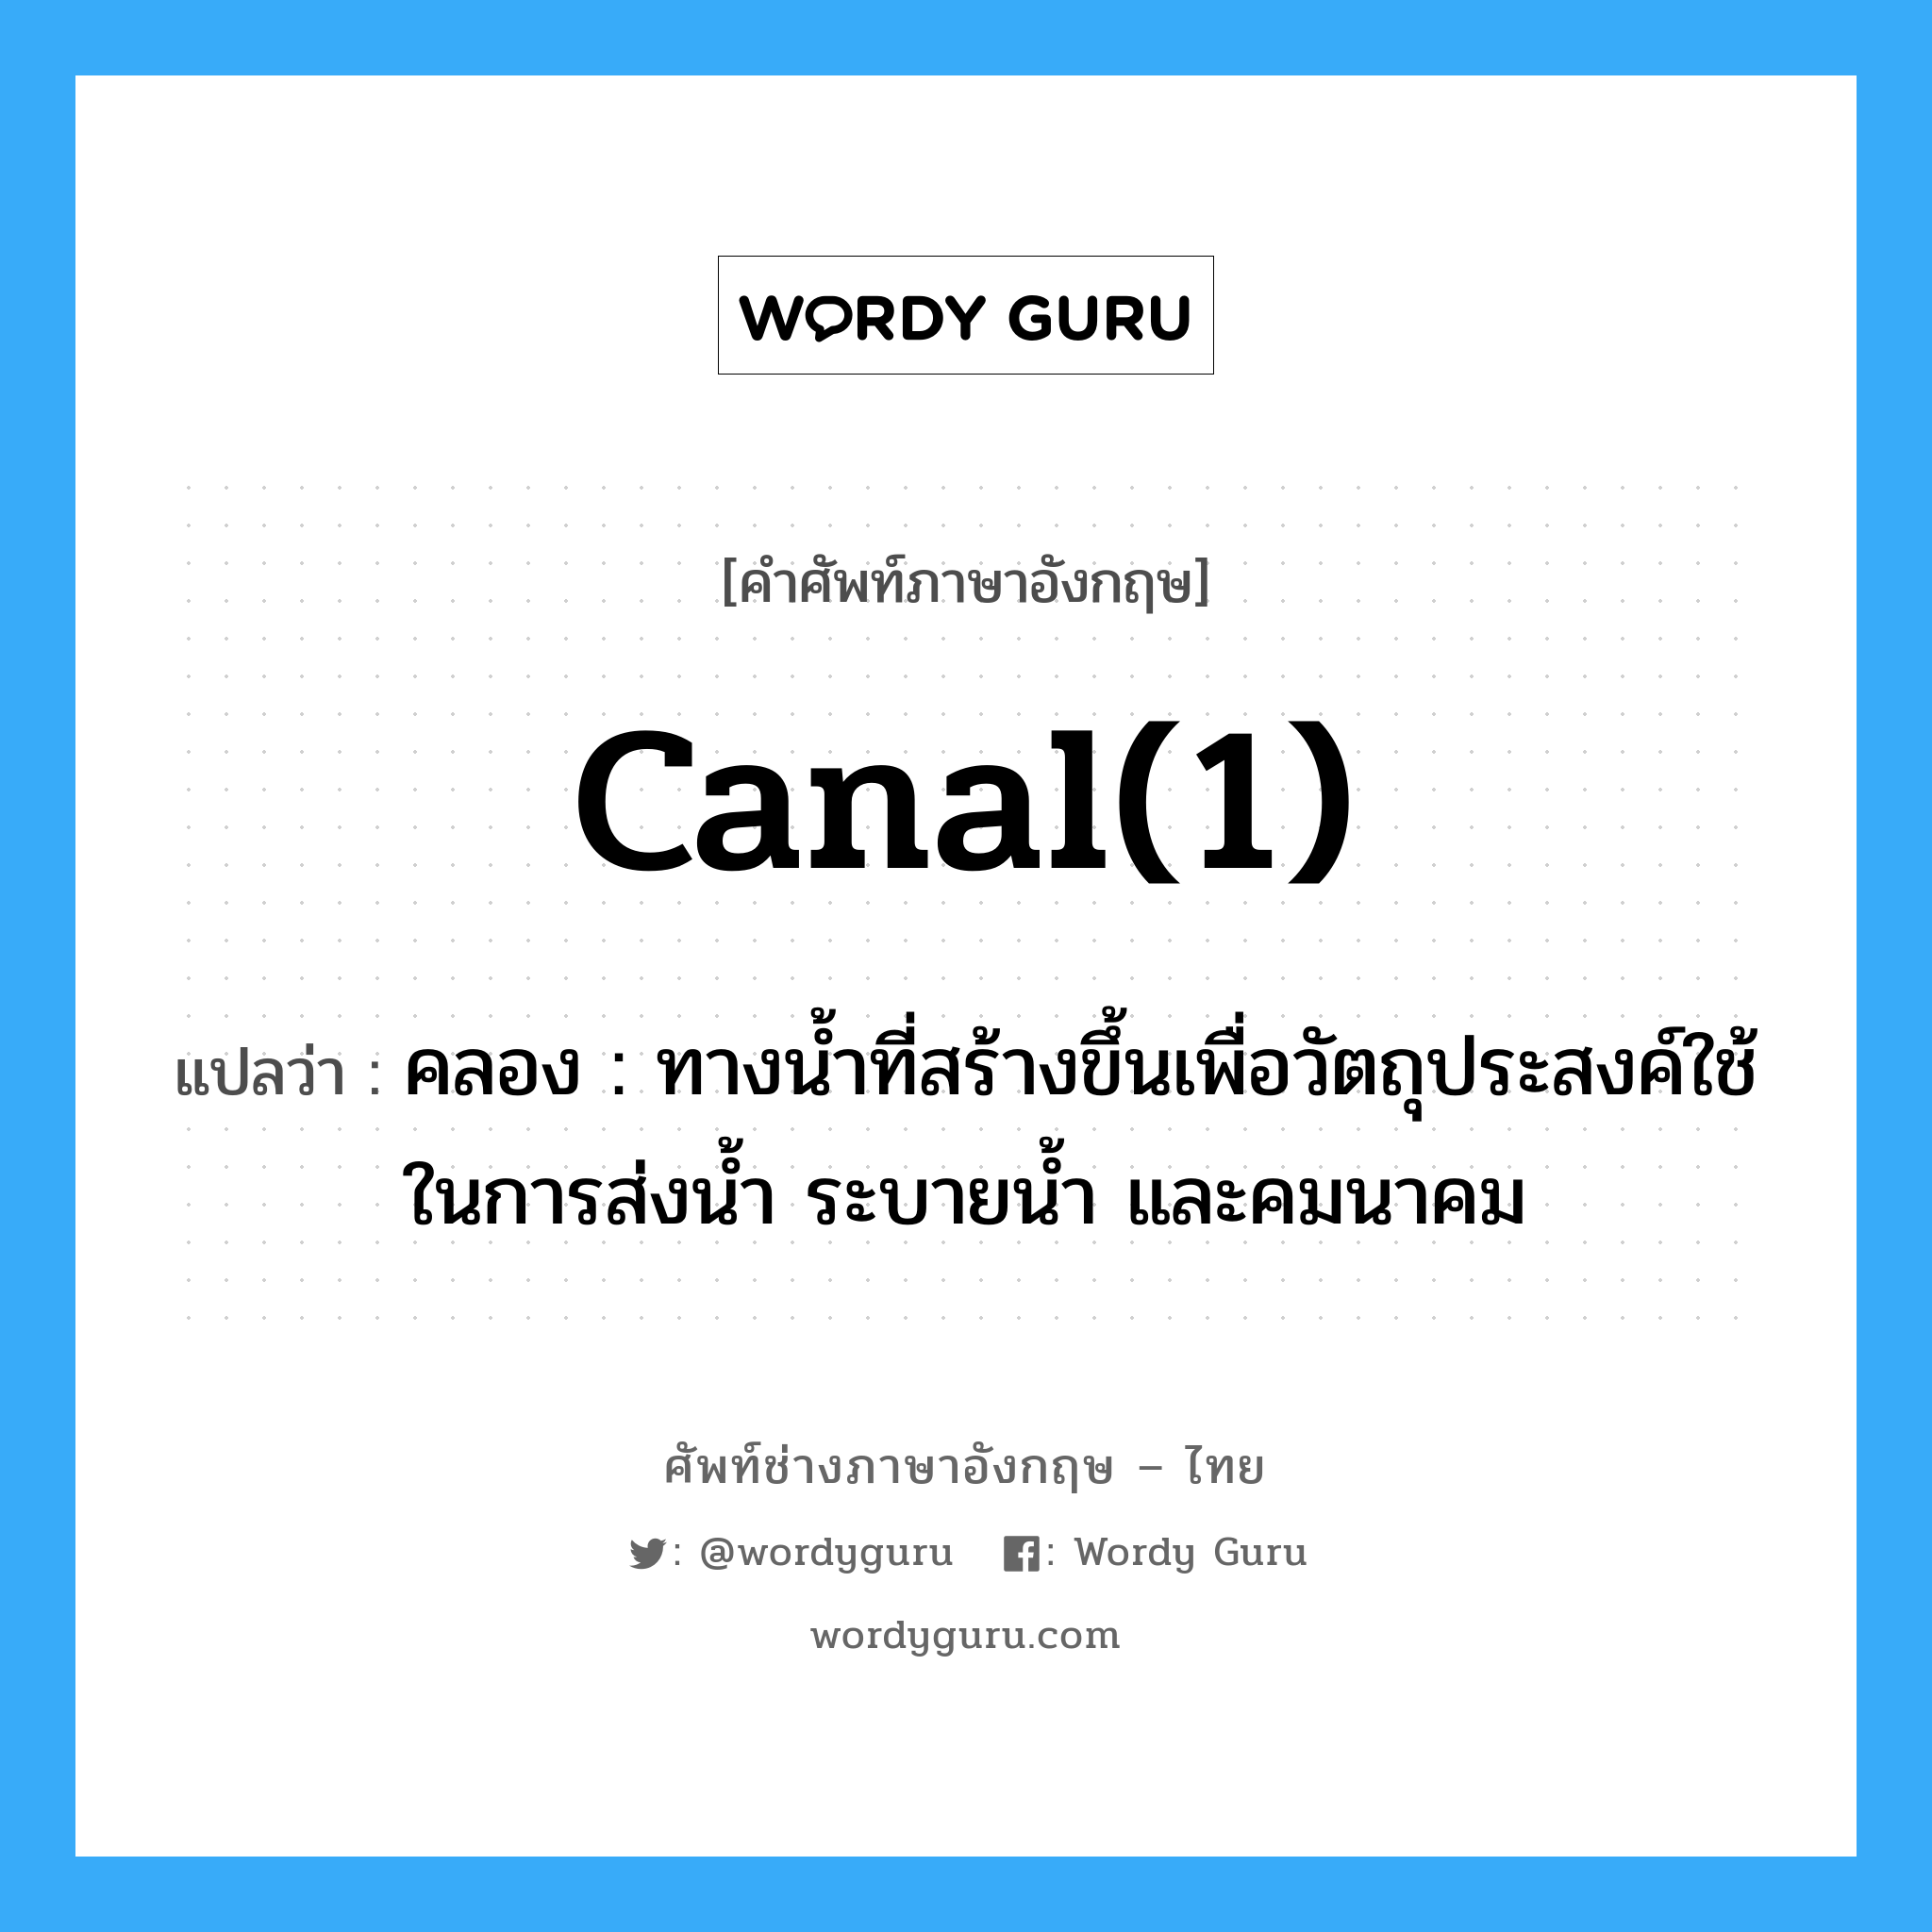 canal(1) แปลว่า?, คำศัพท์ช่างภาษาอังกฤษ - ไทย canal(1) คำศัพท์ภาษาอังกฤษ canal(1) แปลว่า คลอง : ทางน้ำที่สร้างขึ้นเพื่อวัตถุประสงค์ใช้ในการส่งน้ำ ระบายน้ำ และคมนาคม